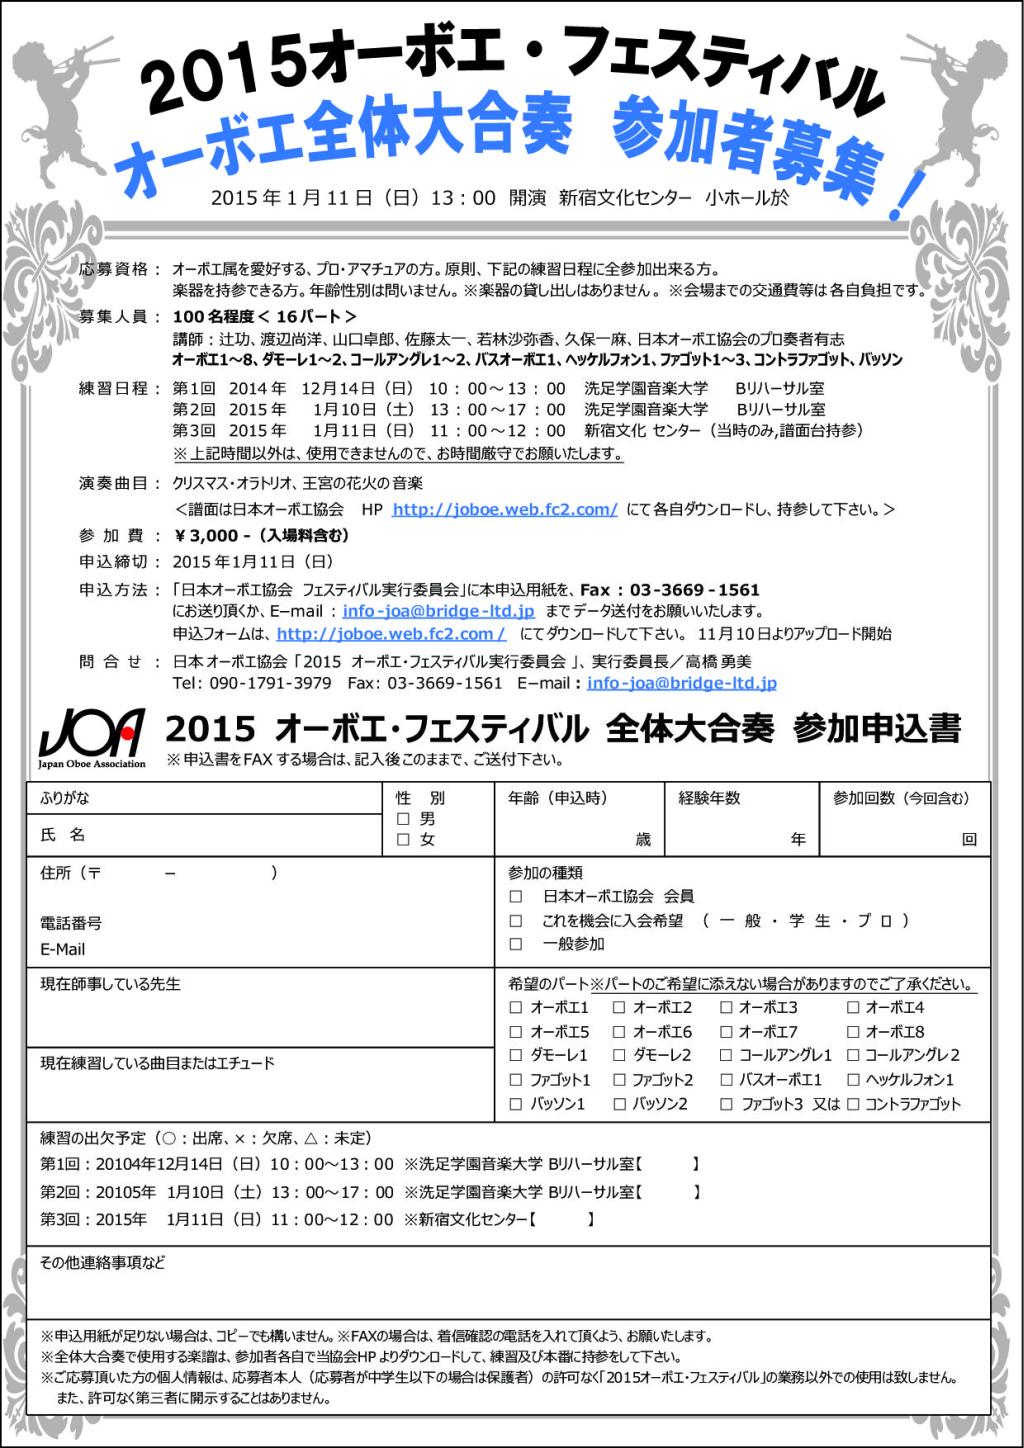 flyer/2015ObFesOubo.jpg